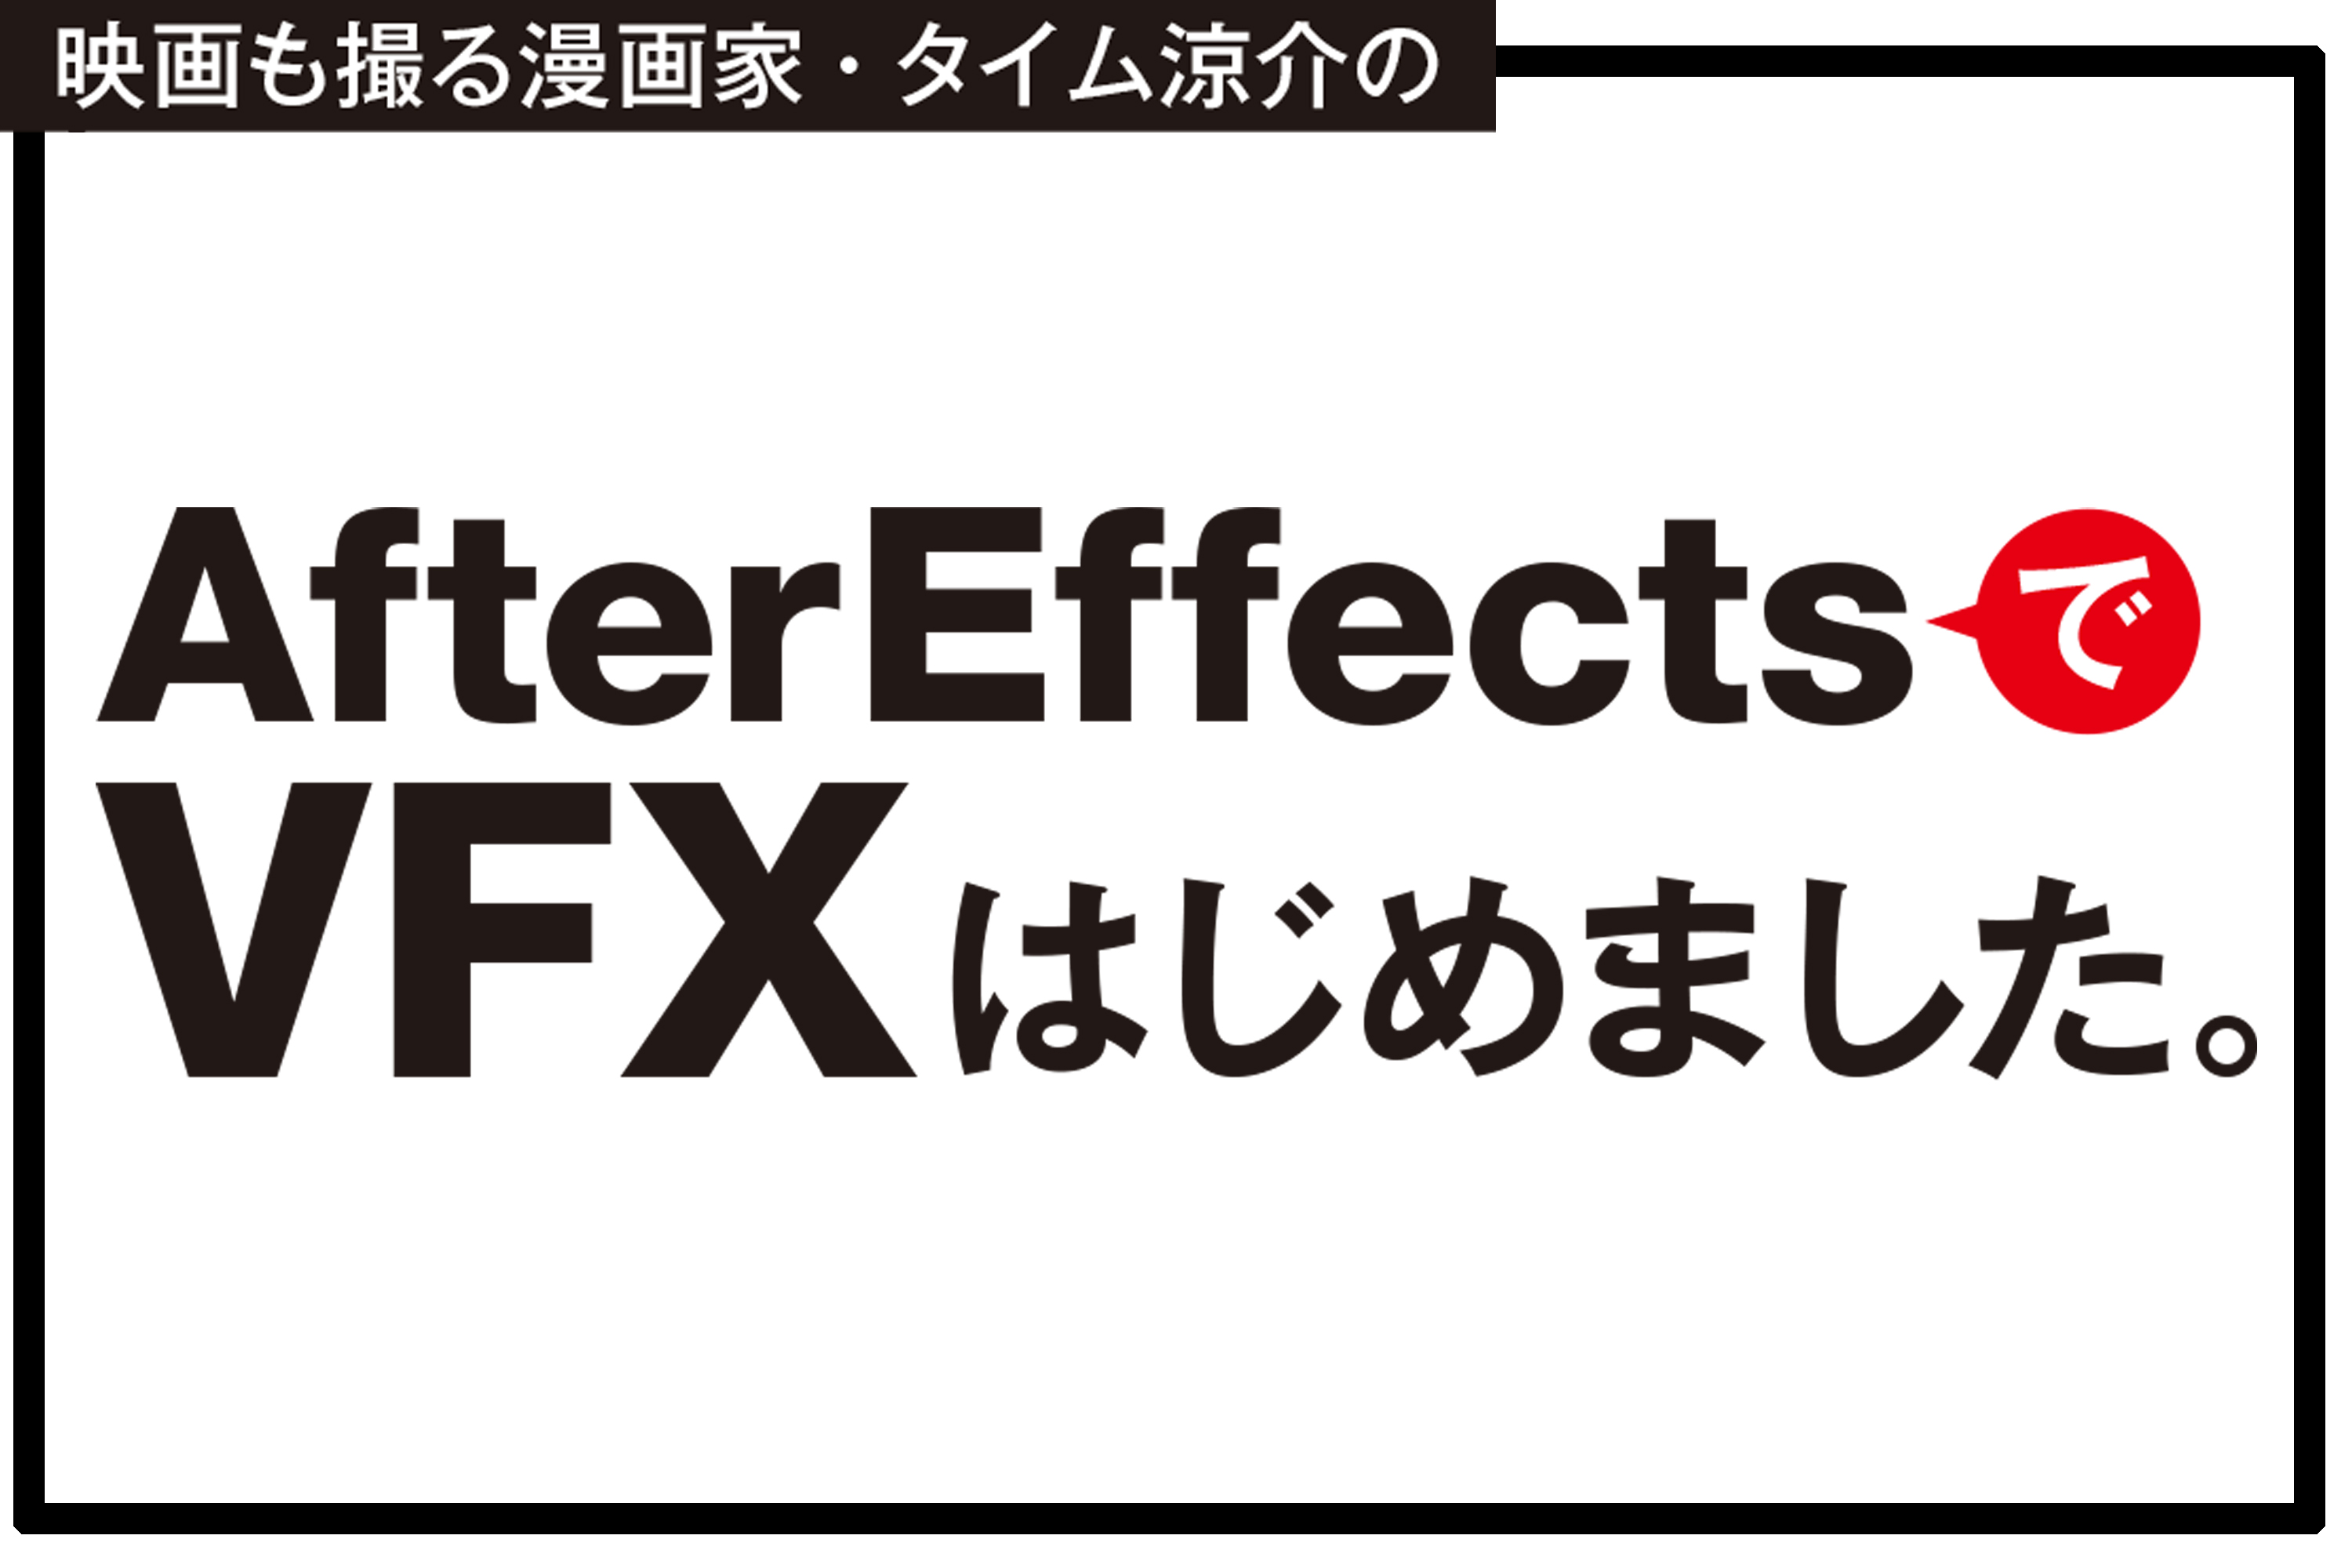 After EffectsでVFXはじめました。Vol.5 無料プラグインSABERで